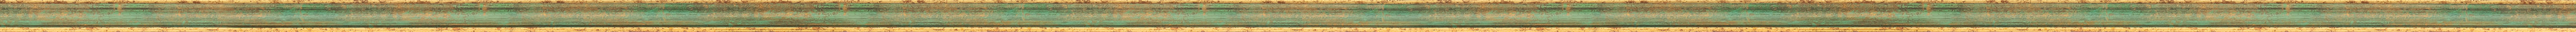 Πράσινη με χρυσό κορνίζα frame